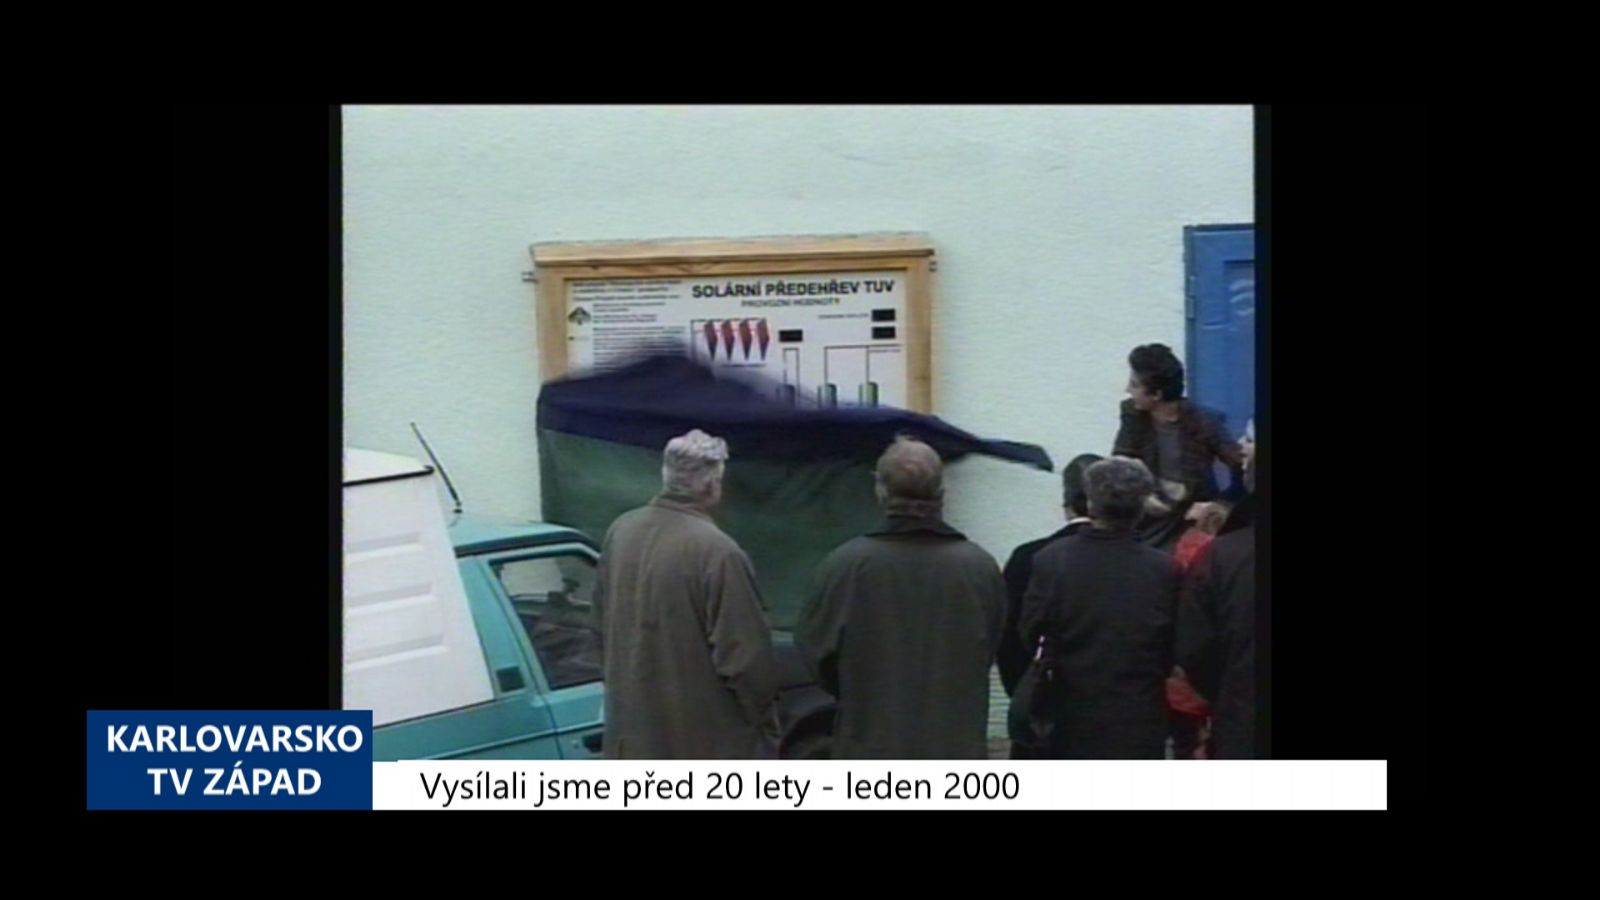 2000 – Cheb: Byl ukončen mezinárodní projekt za 450 milionů (TV Západ)